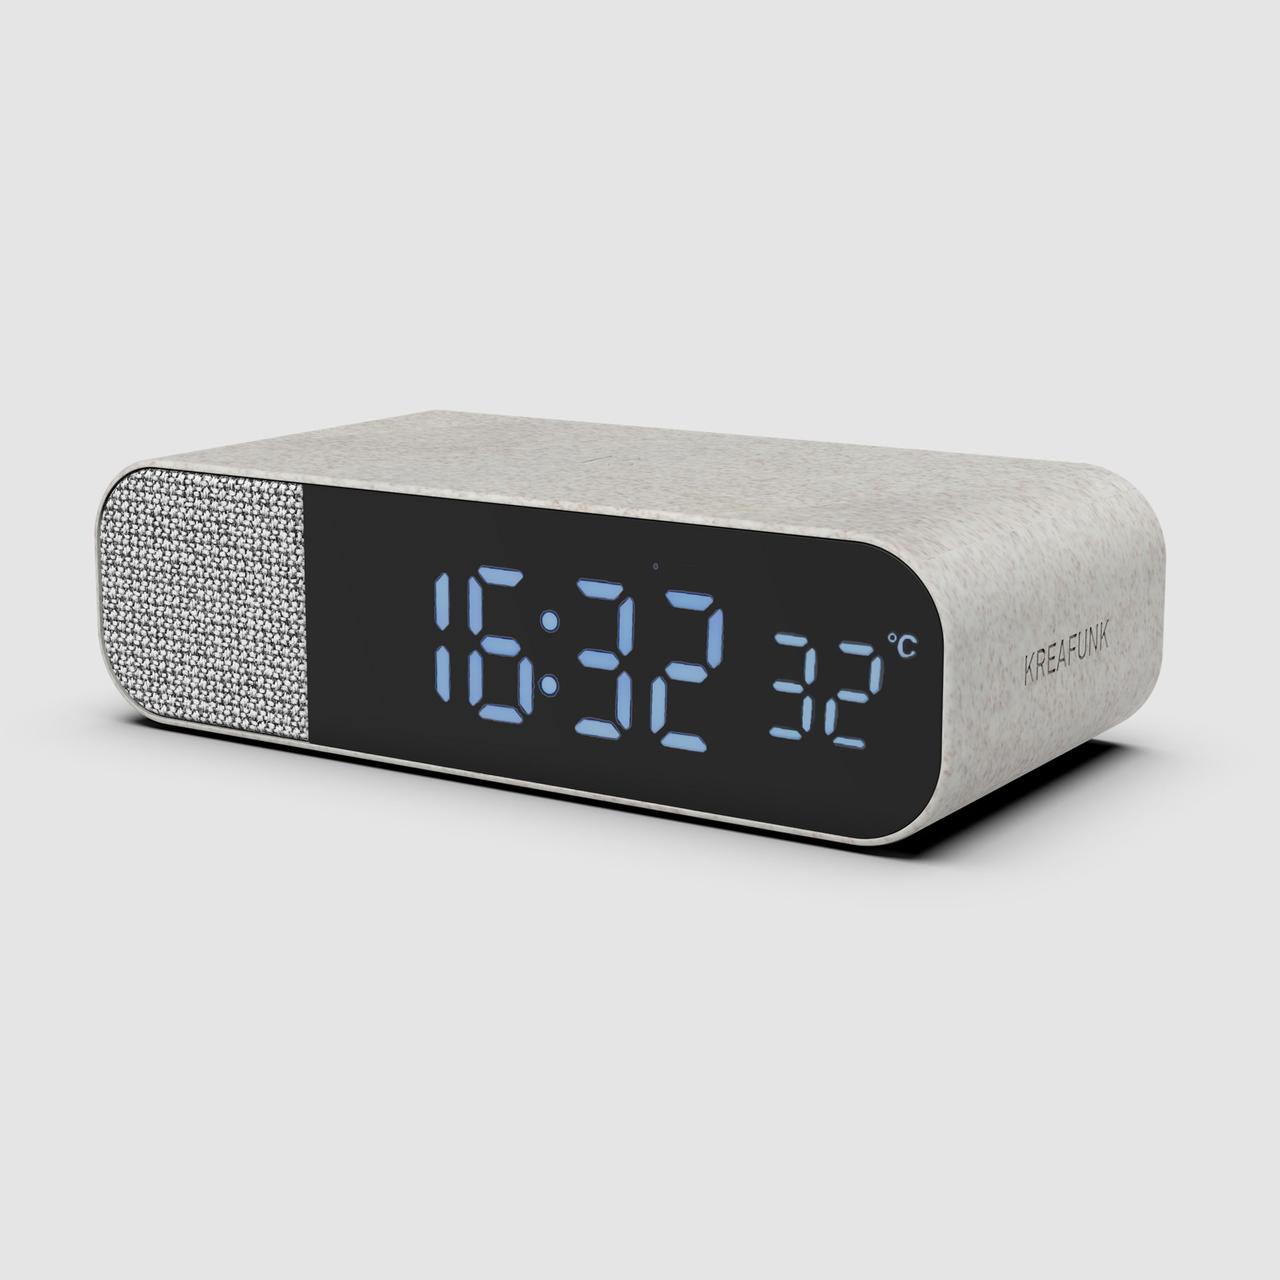 aWAKE BT Speaker and Alarm Clock - nachhaltiger Wecker mit verschiedenen Wecktönen und Temperatur-Anzeige